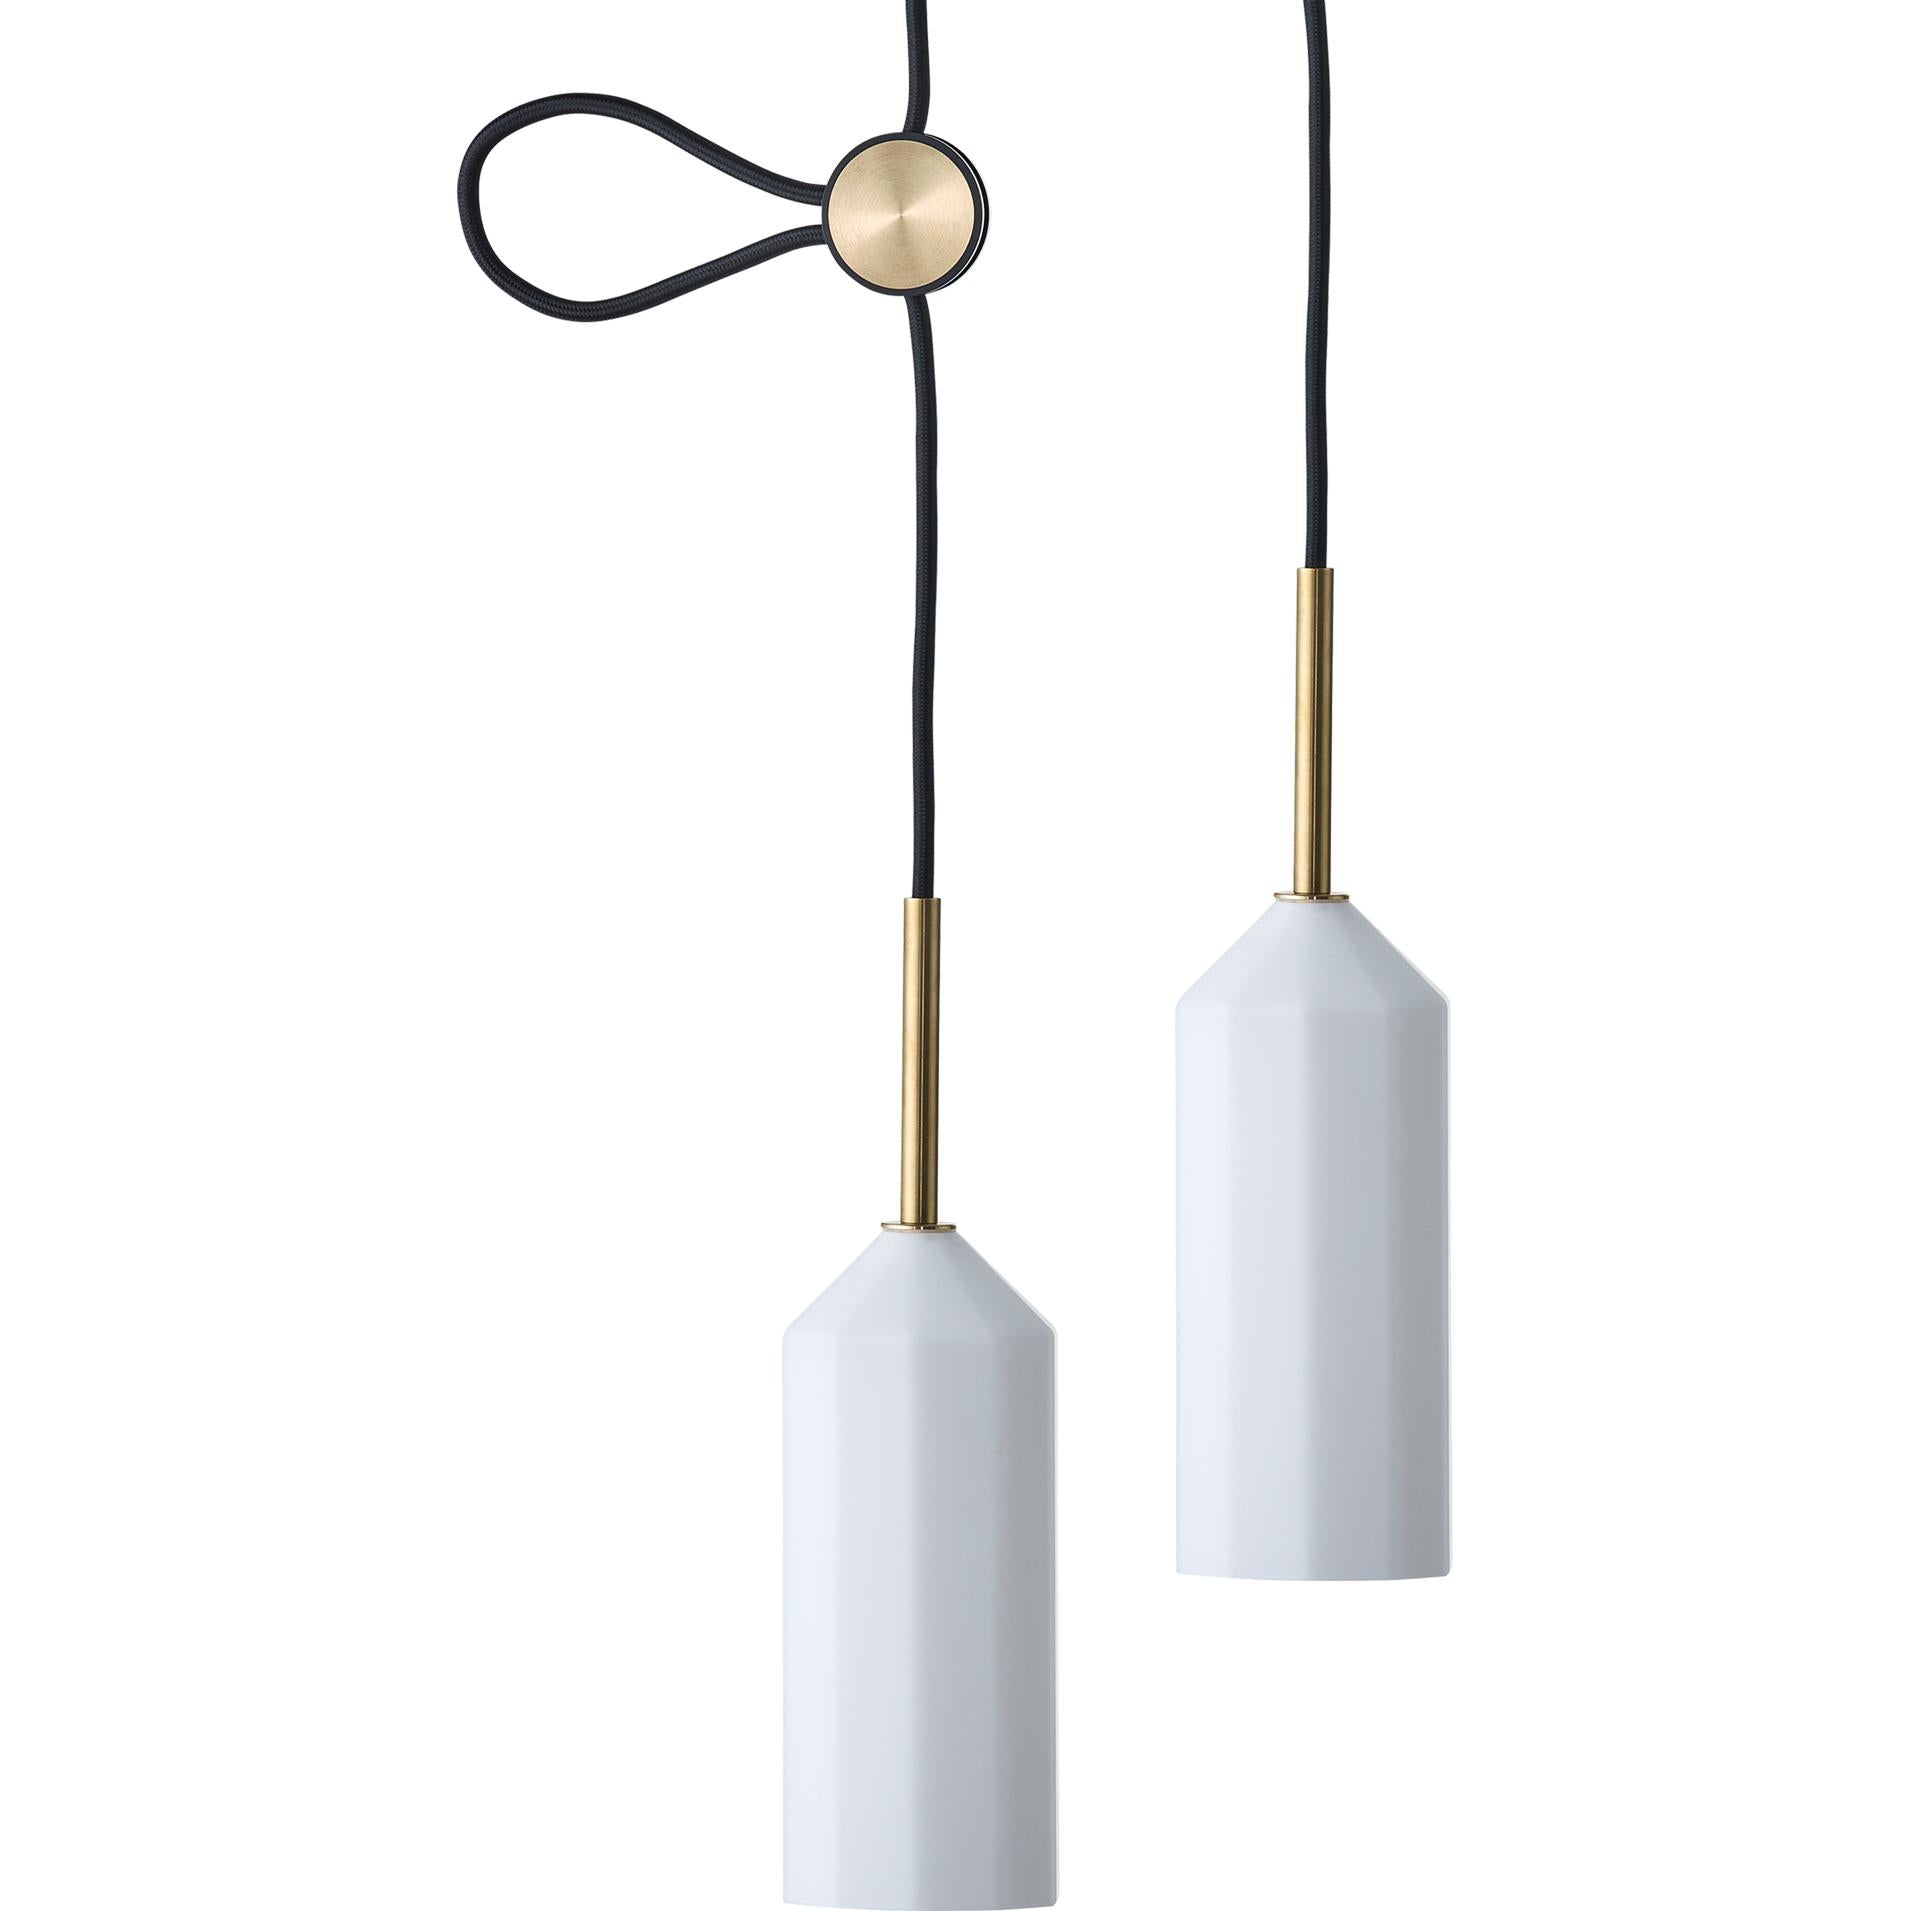 Le Klint Pliverre Suspension Lamp 8,5 Cm, 2 Pieces